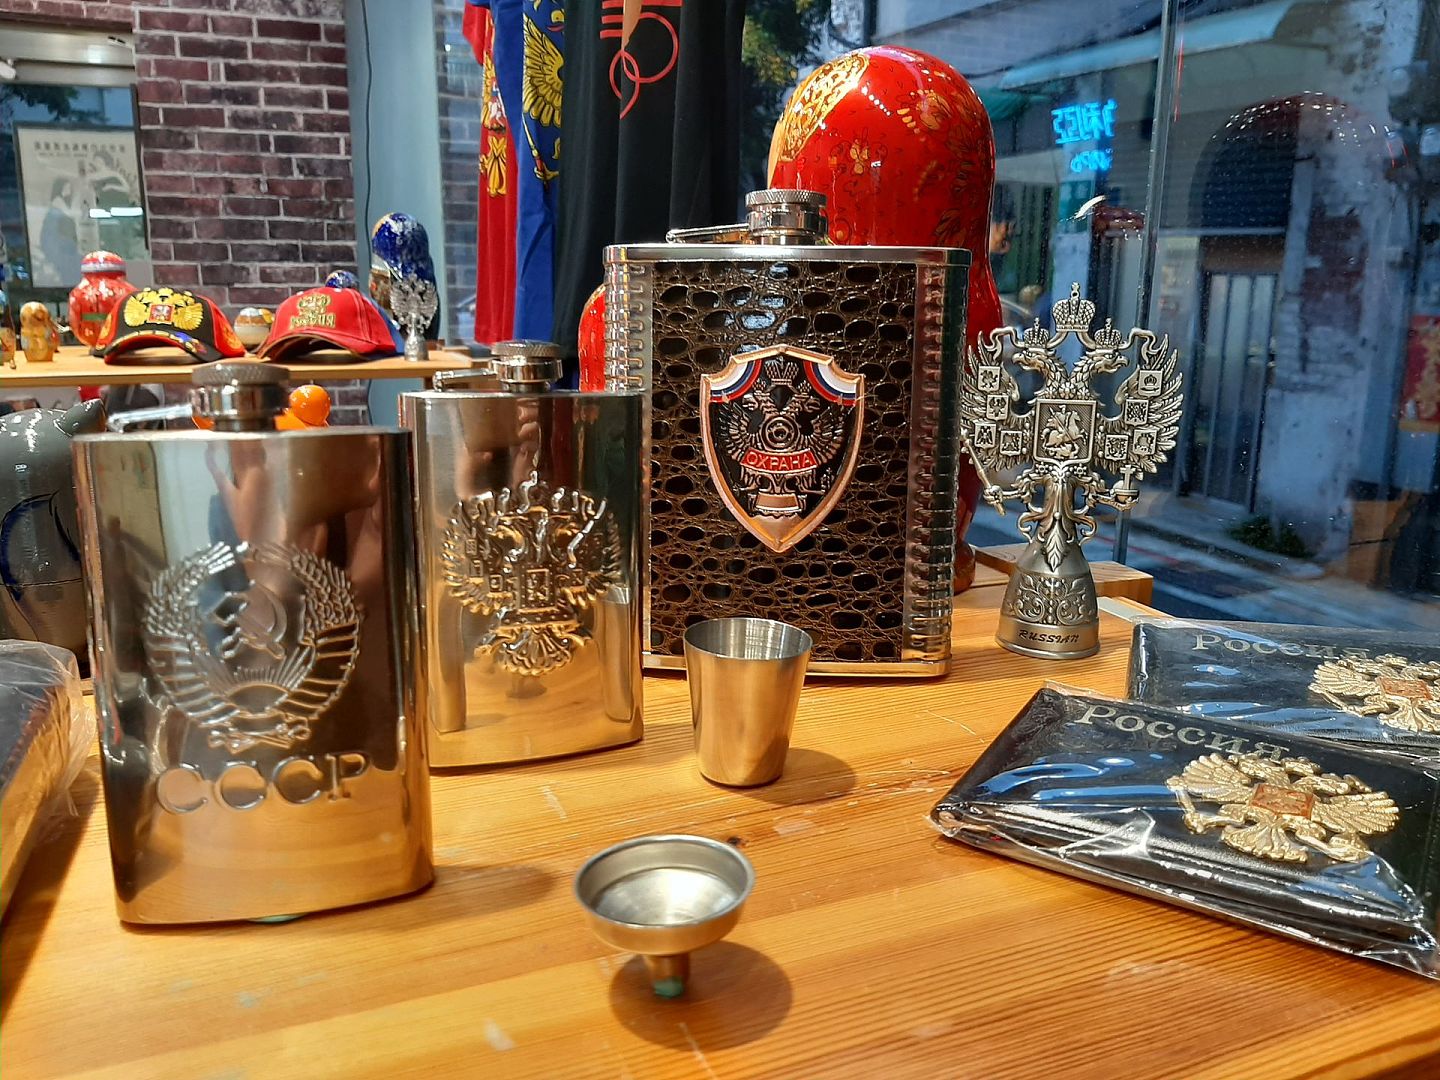 洋可夫俄罗斯商行于2018年开张，贩售伏特加、松子、蜂蜜等俄罗斯产品，在台北的迪化街商圈独树一格，图为其店内贩售的纪念品。（祁宾鸿／多维新闻）